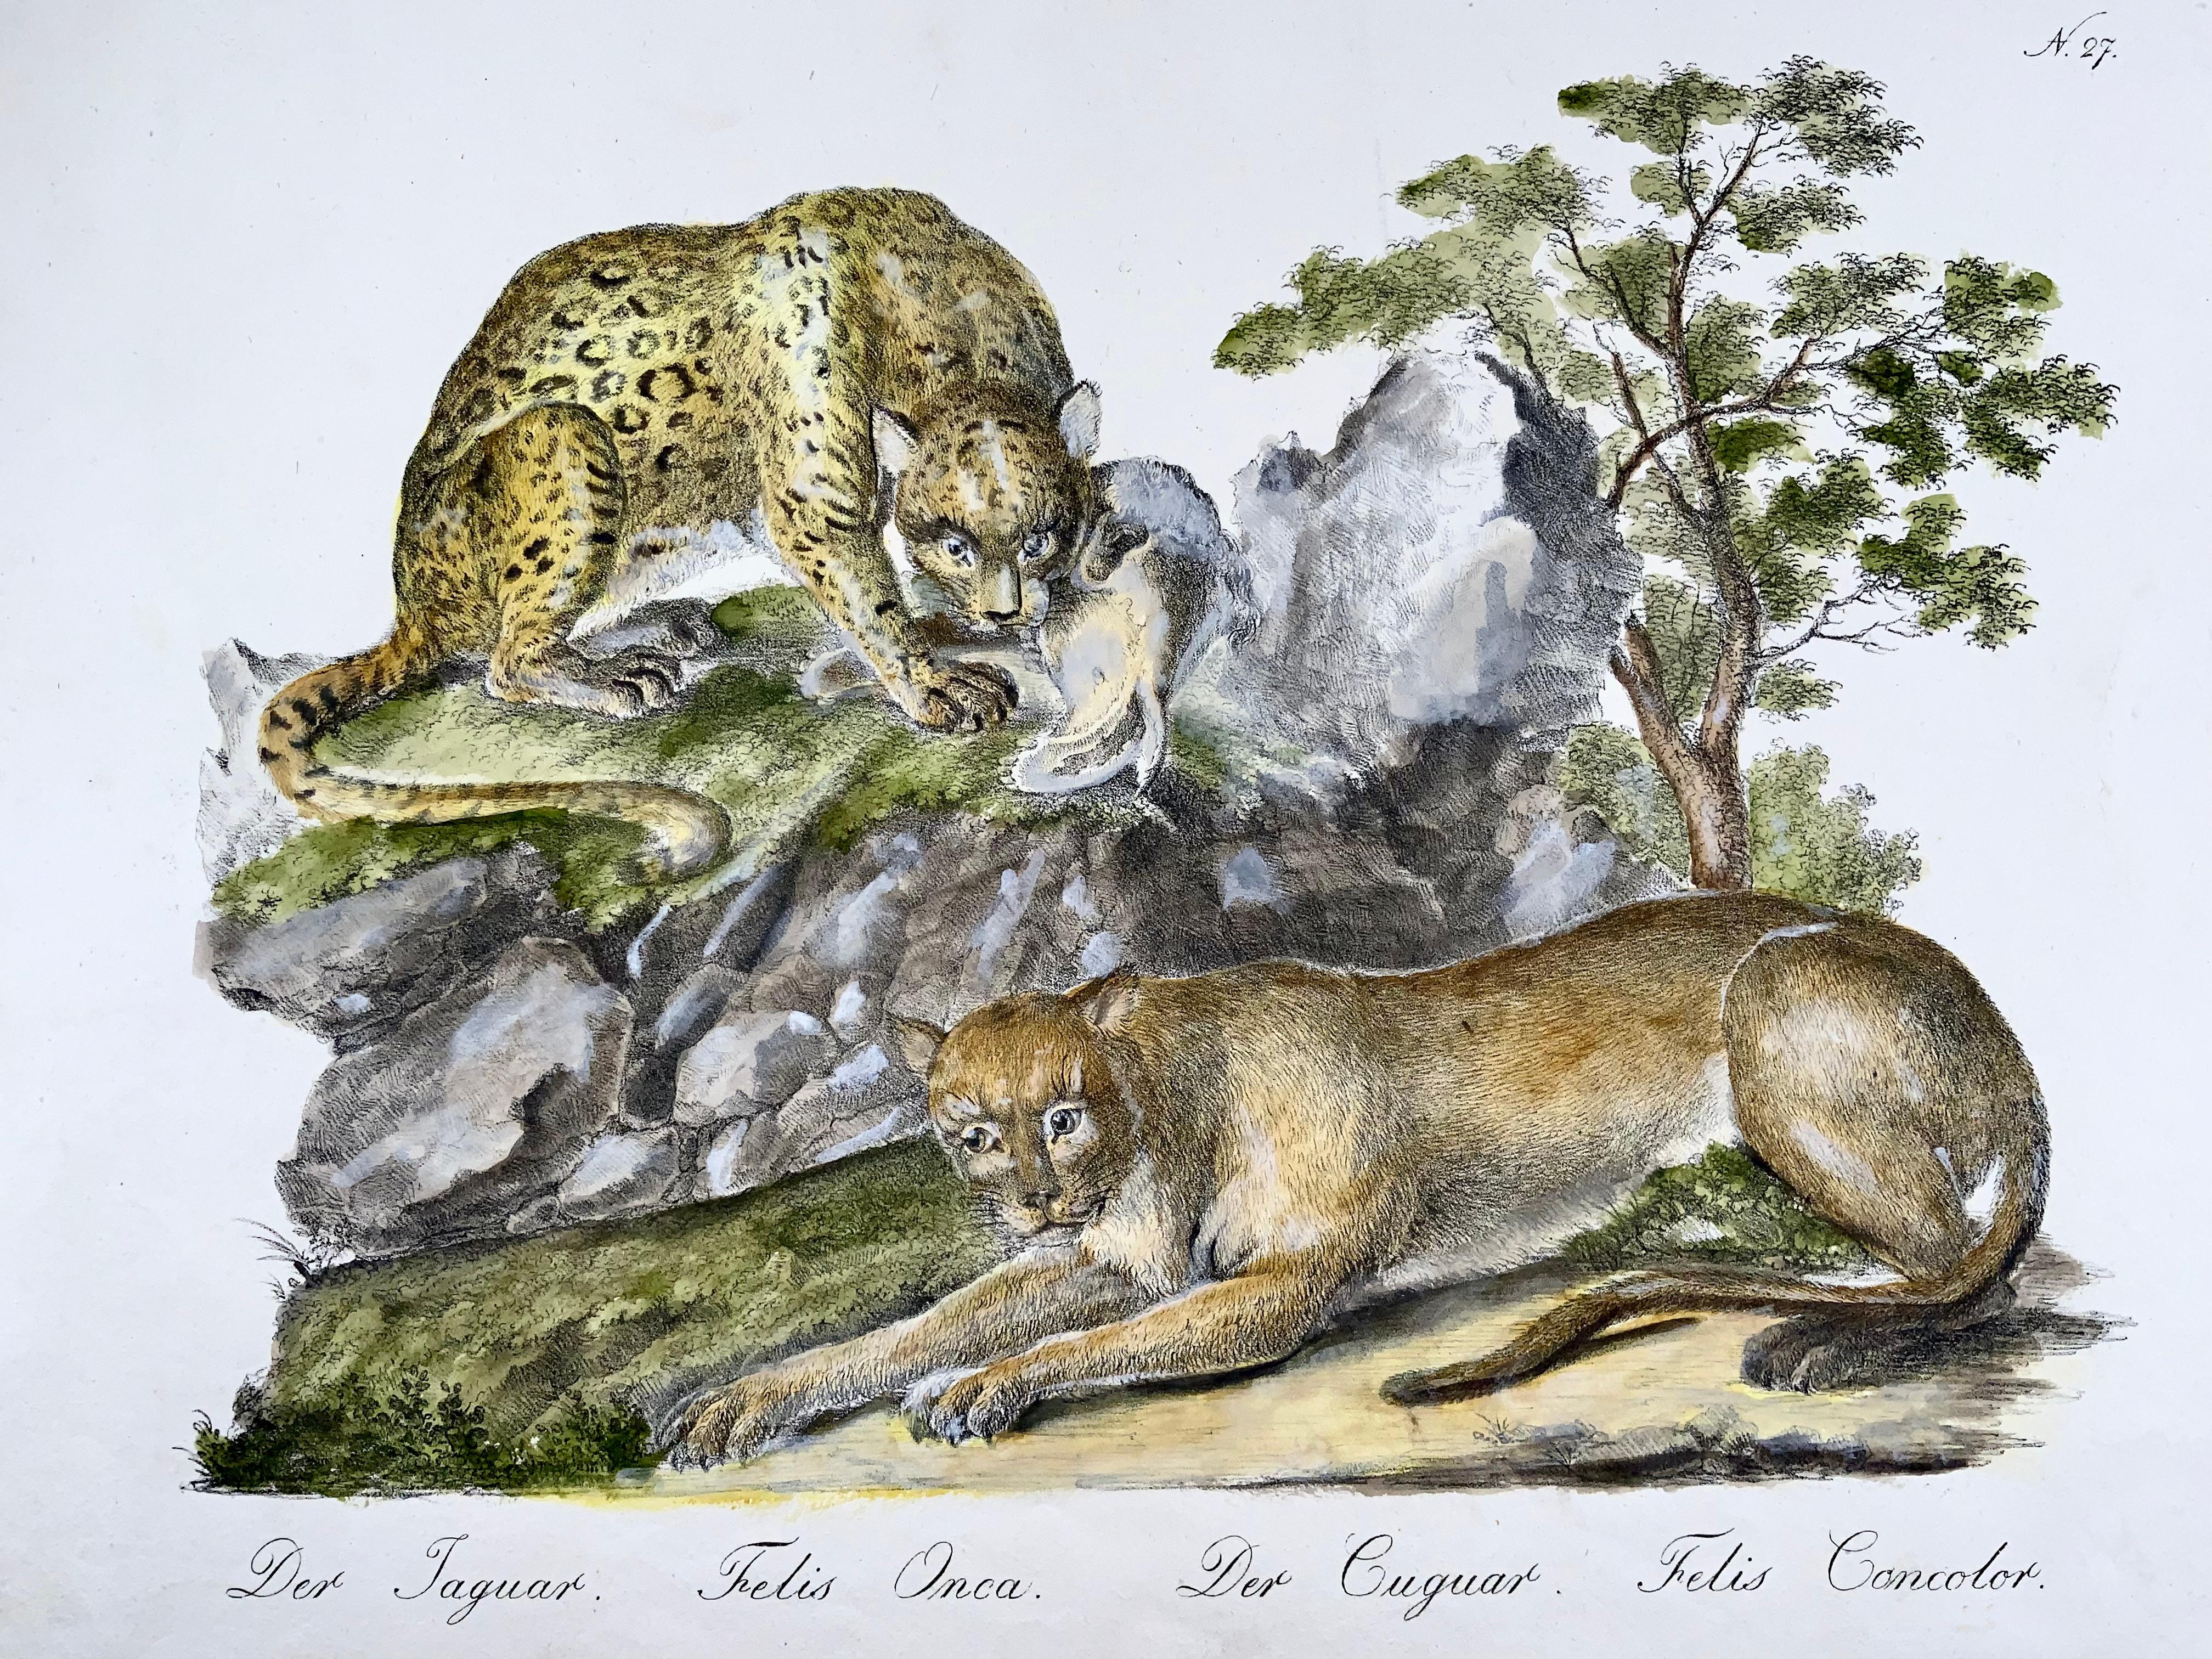 cougar vs jaguar size